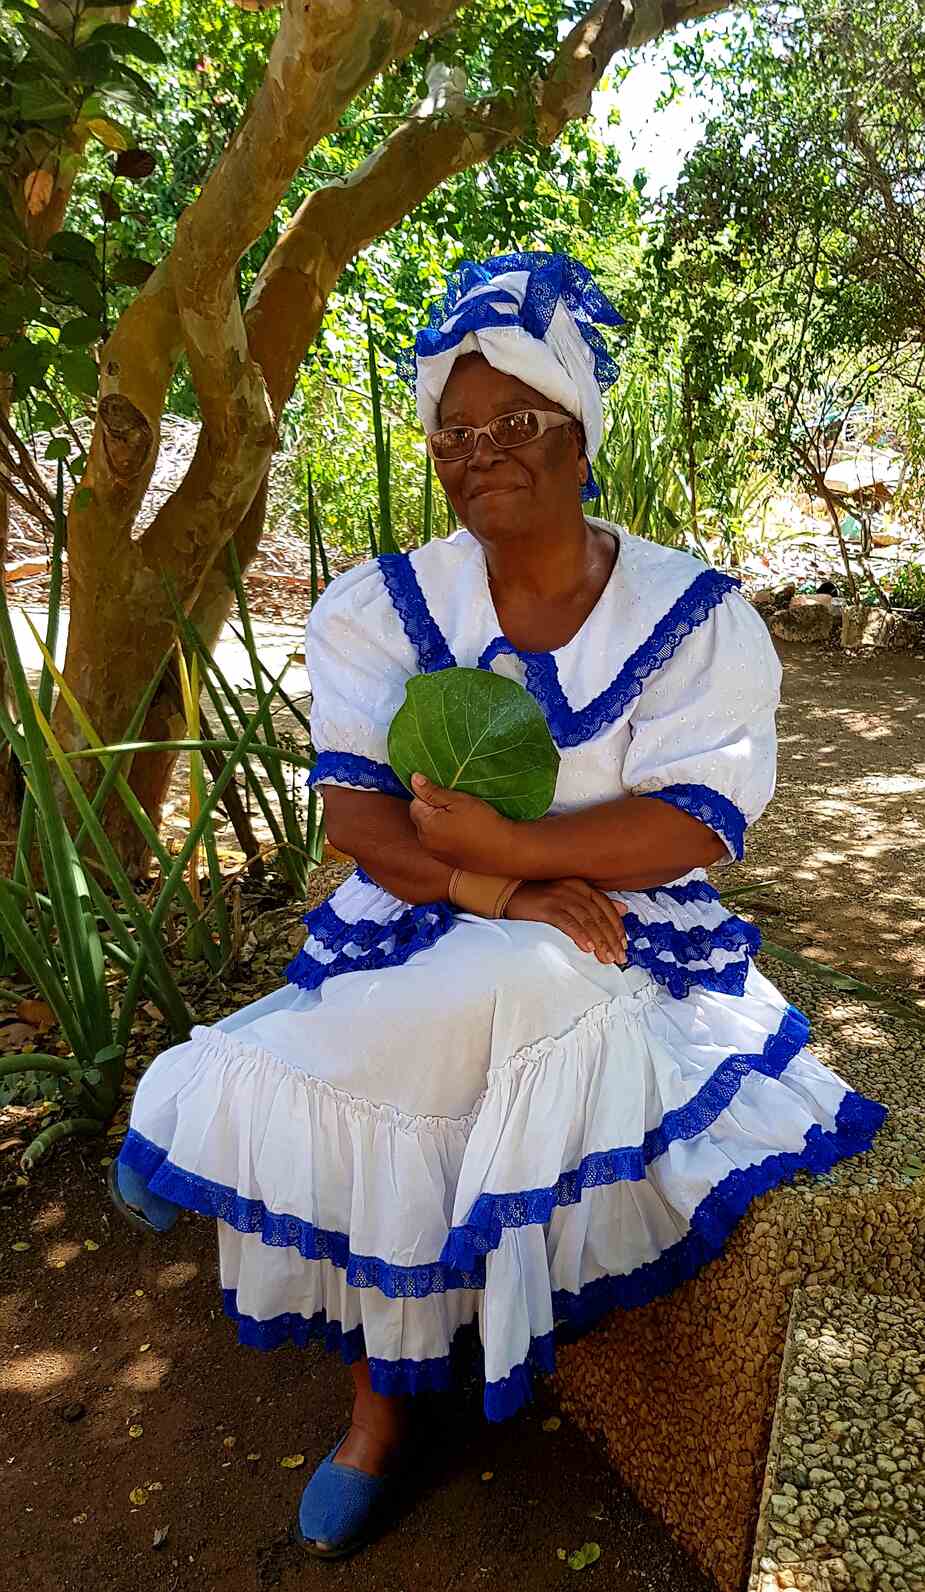 Gids op Curaçao in traditionele kledij